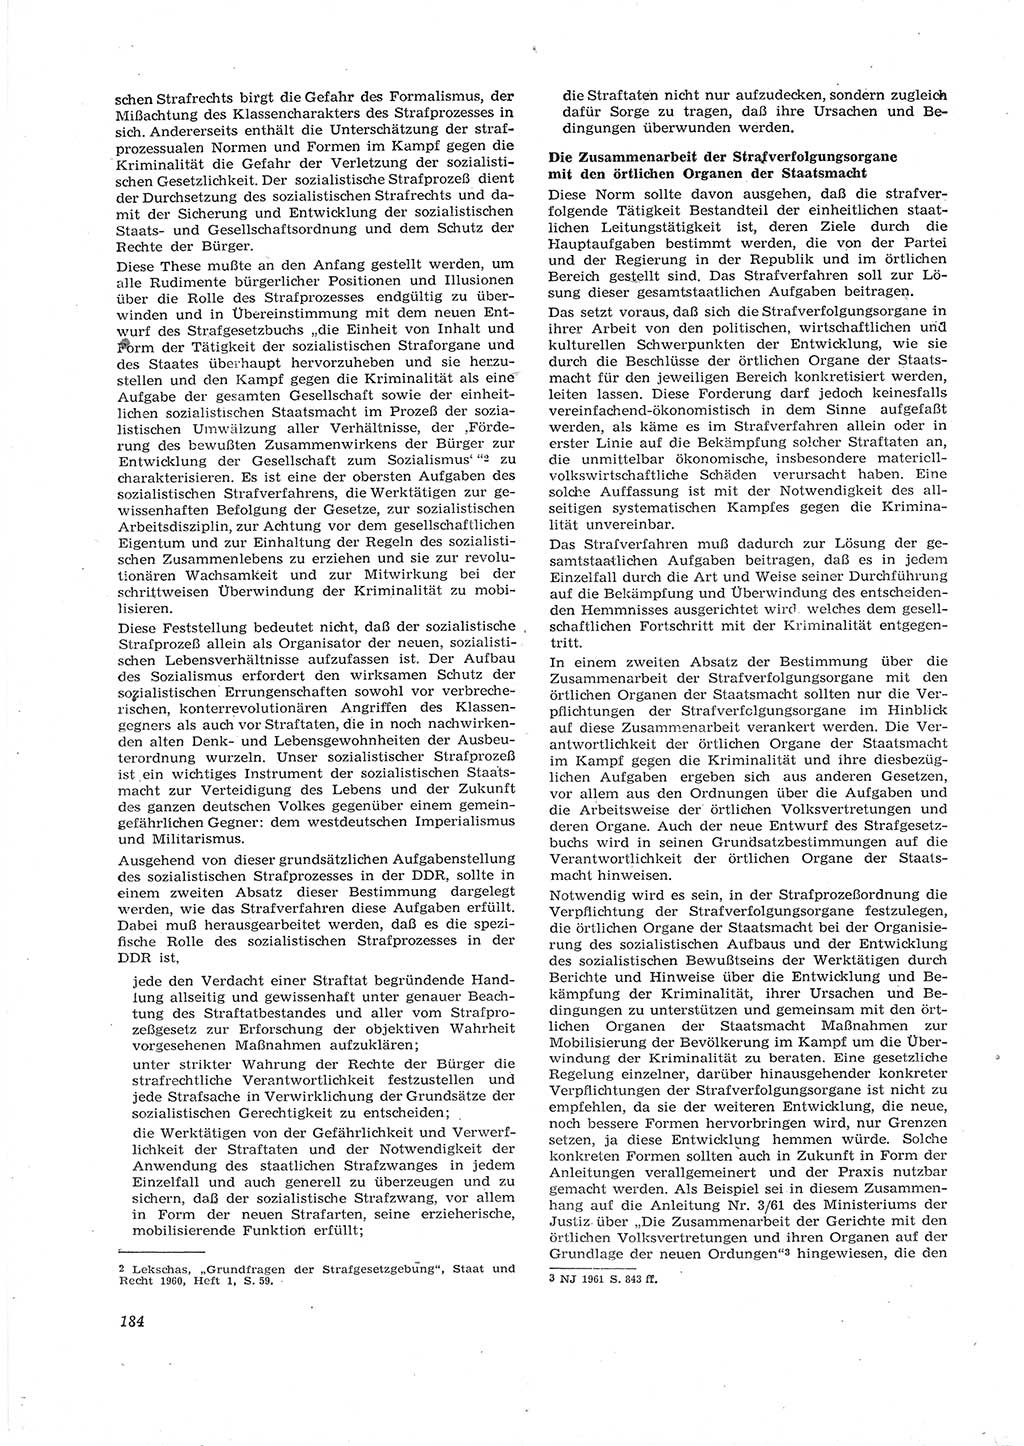 Neue Justiz (NJ), Zeitschrift für Recht und Rechtswissenschaft [Deutsche Demokratische Republik (DDR)], 16. Jahrgang 1962, Seite 184 (NJ DDR 1962, S. 184)